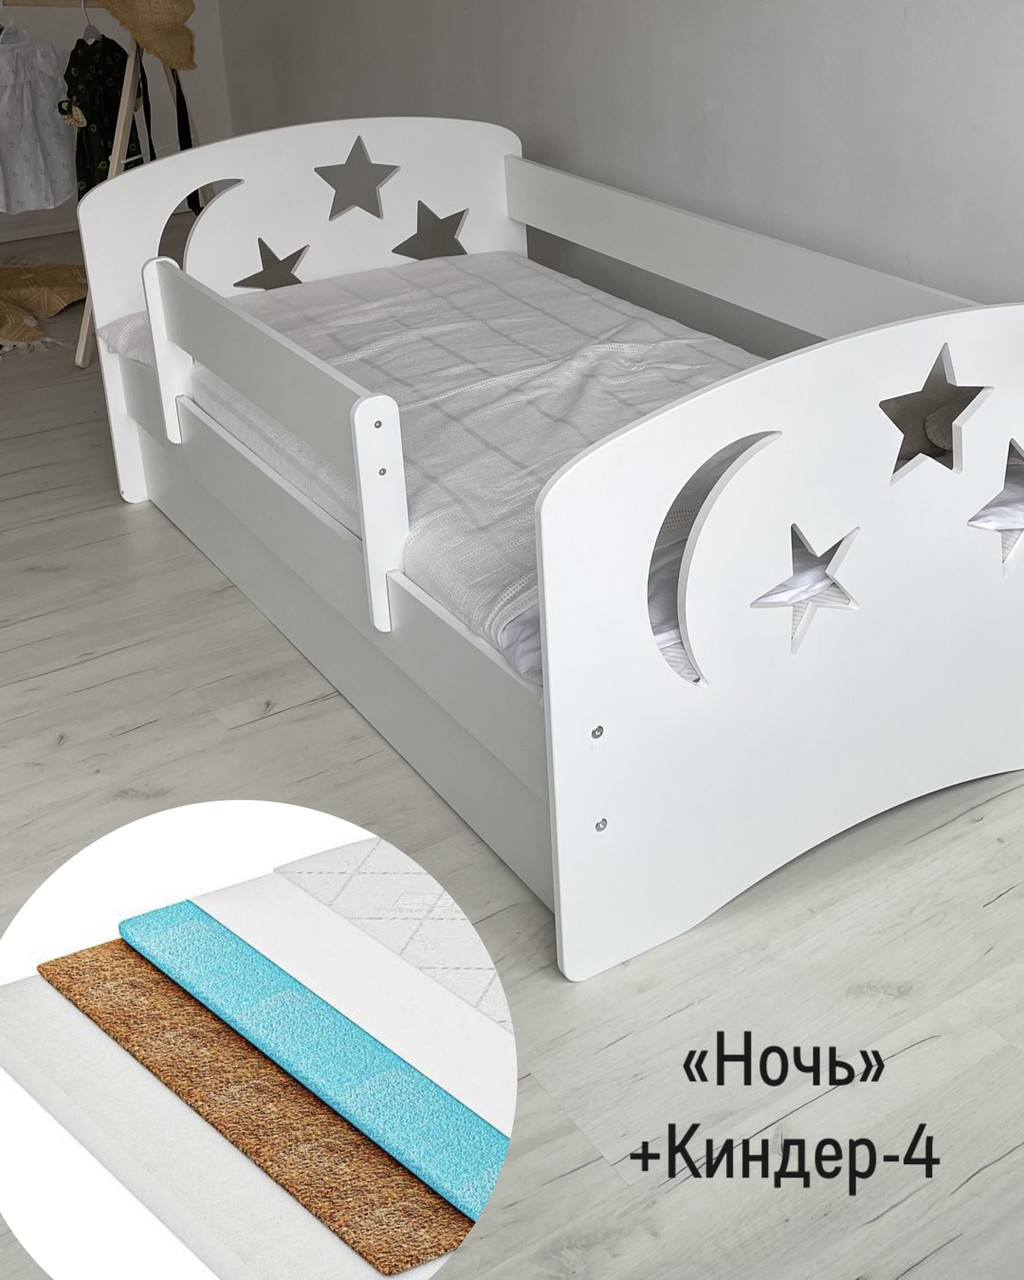 Кровать односпальная «Ночь» 160х80 Столики Детям+ Матрас Киндер-4